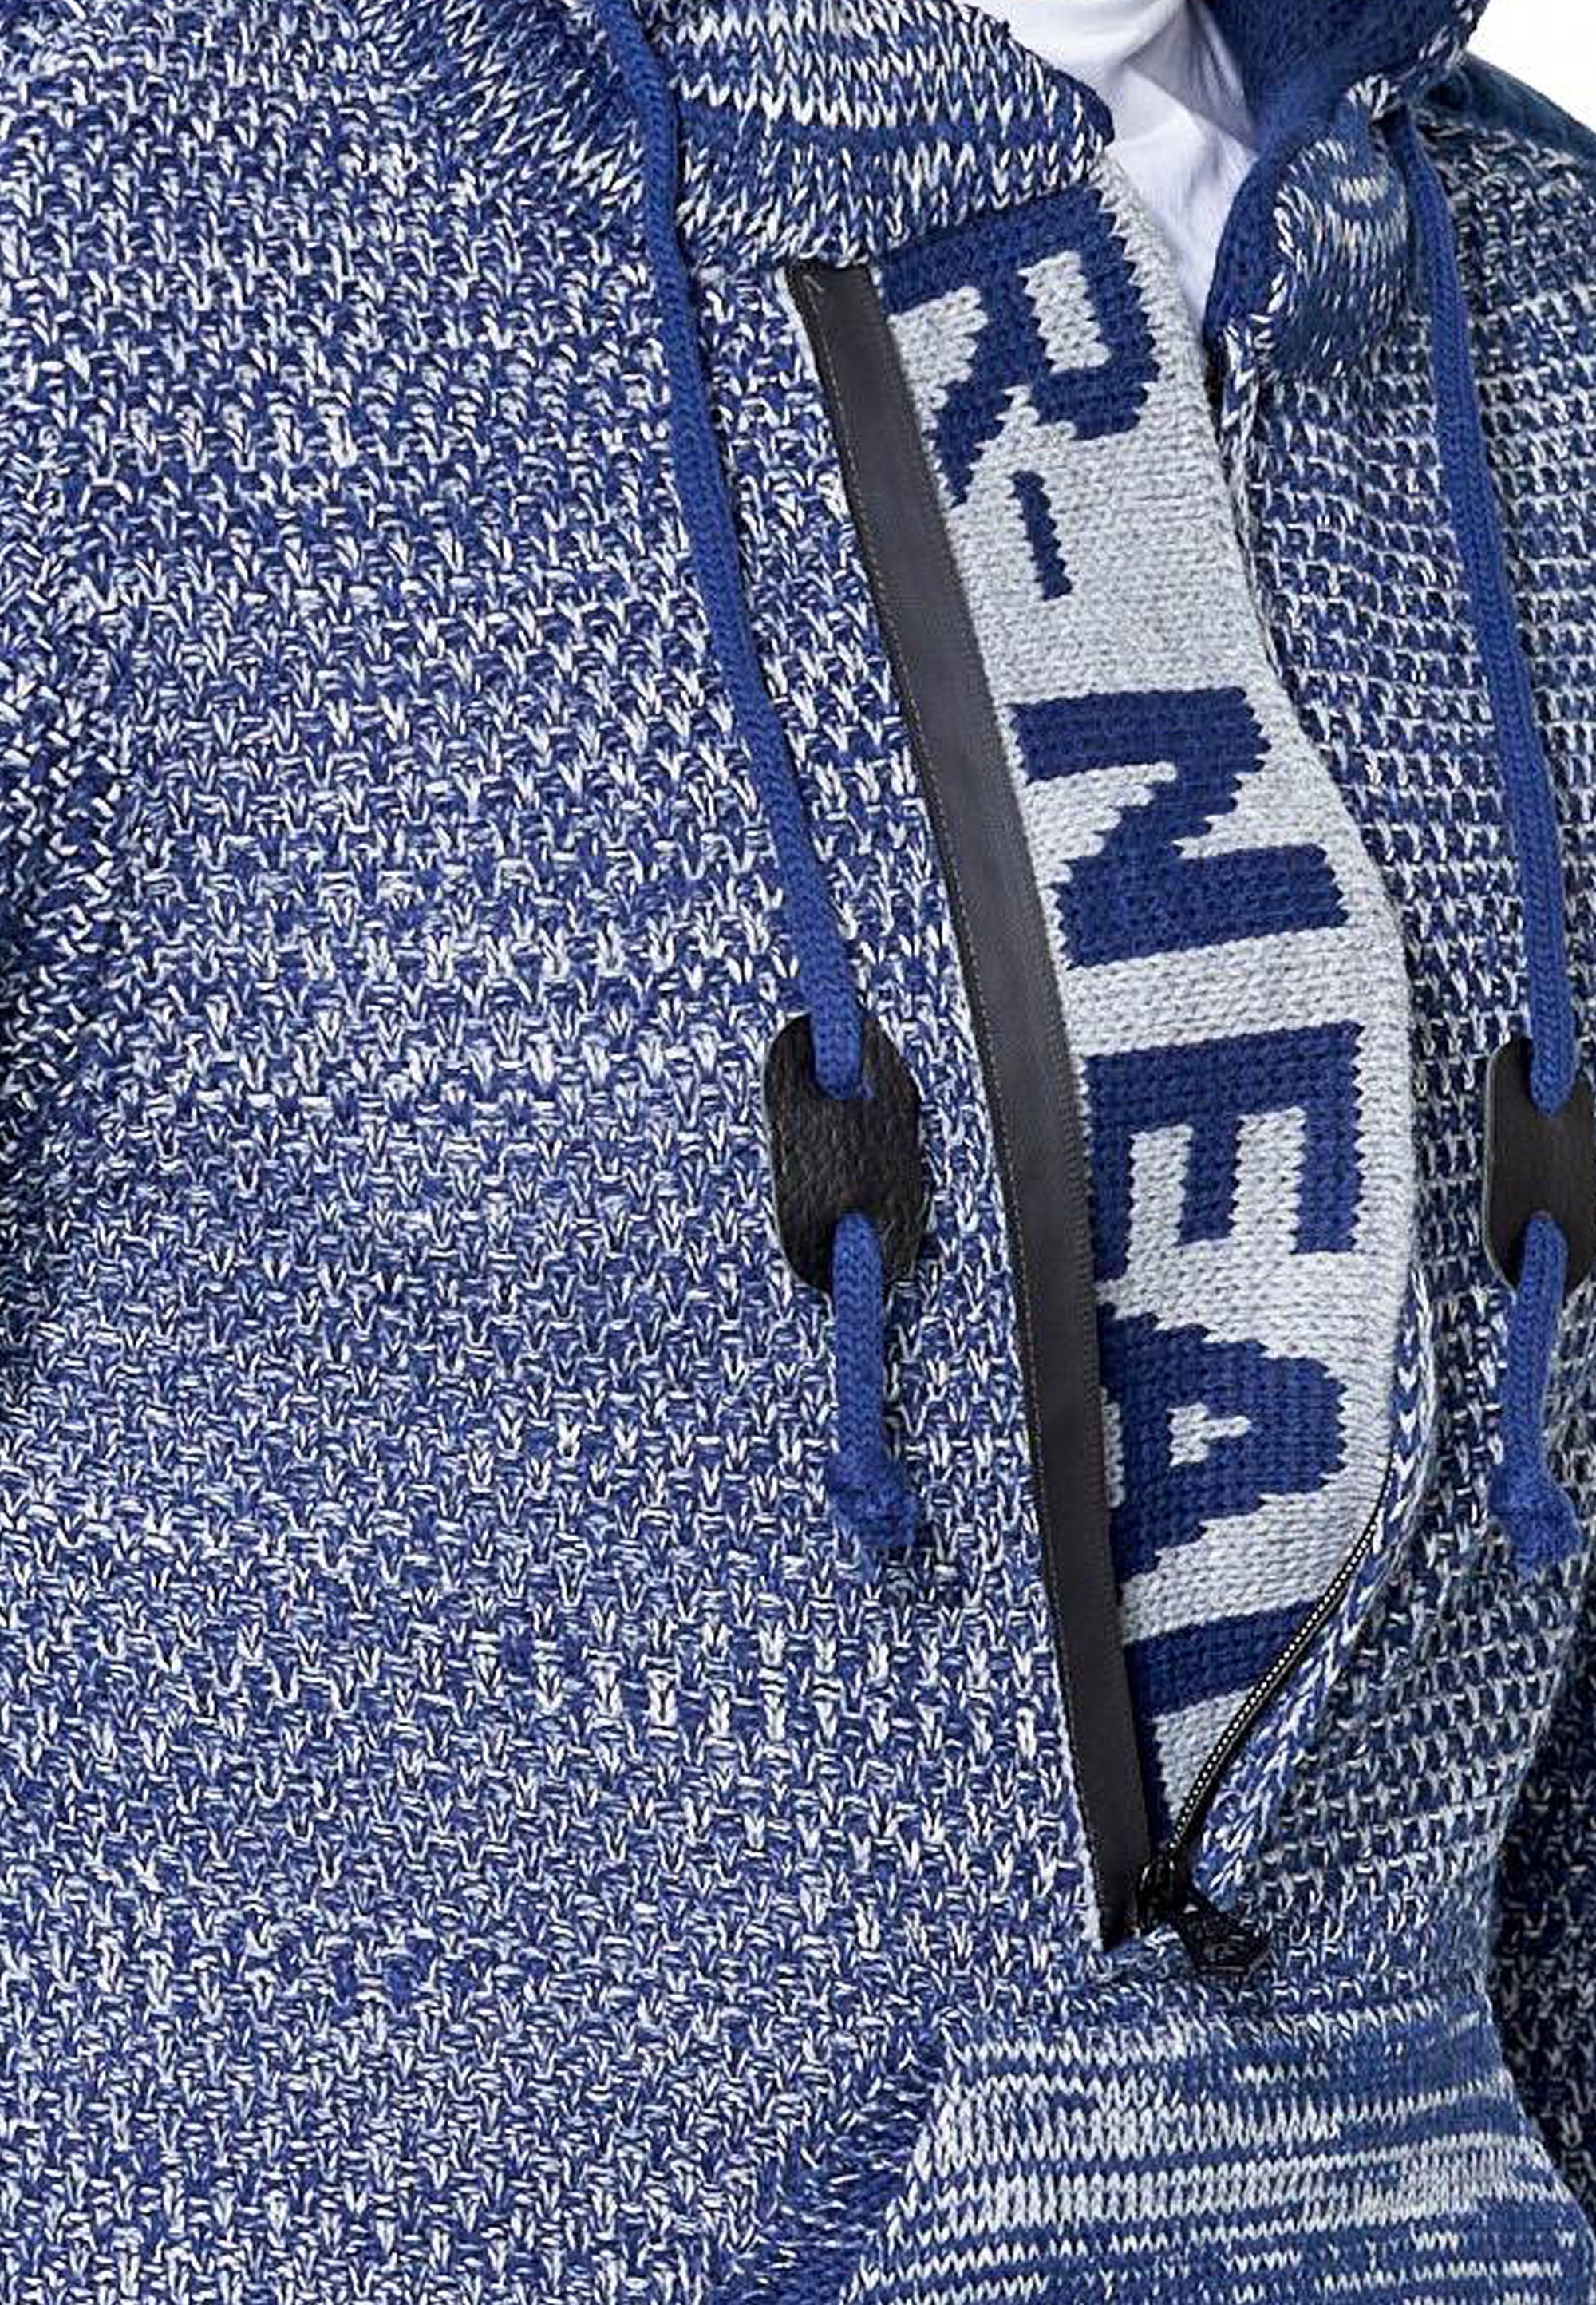 Rusty Neal Knitwear mit Kapuzensweatshirt blau praktischem Reißverschluss